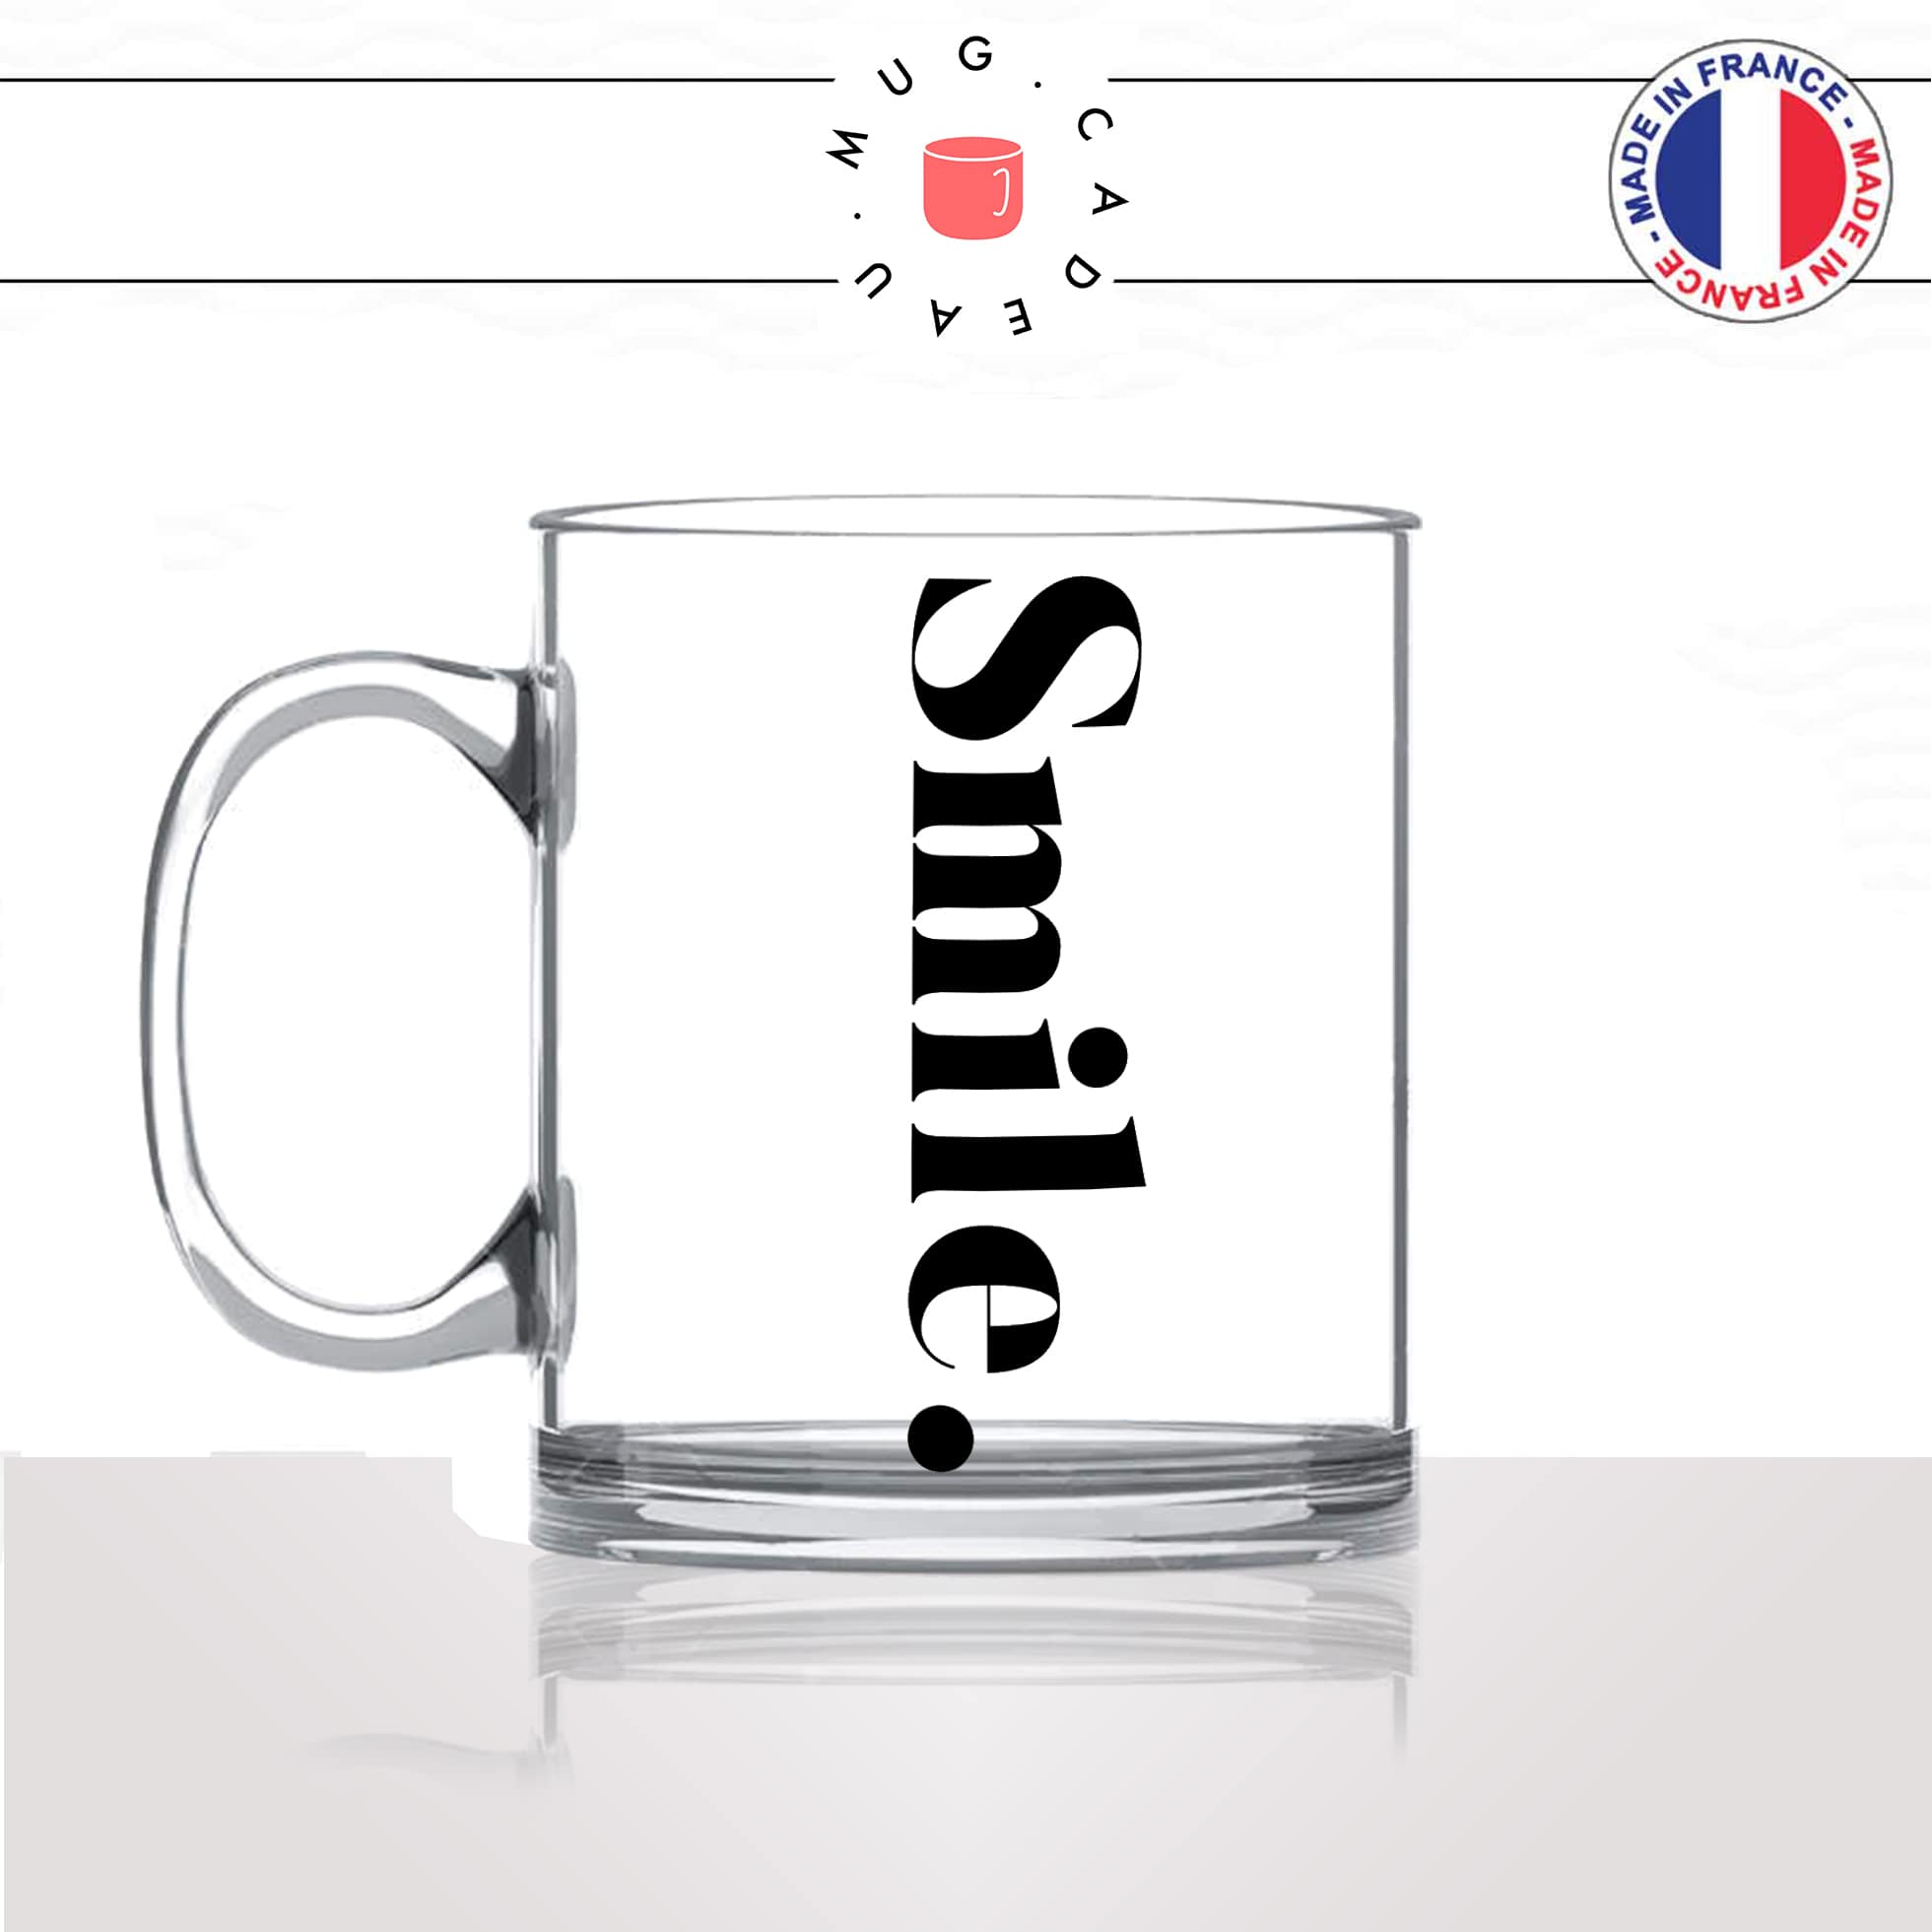 mug-tasse-en-verre-transparent-glass-smile-sourire-calligraphie-lettrine-mot-anglais-collegue-décoration-amie-idée-cadeau-original-personnalisé-café-thé-min